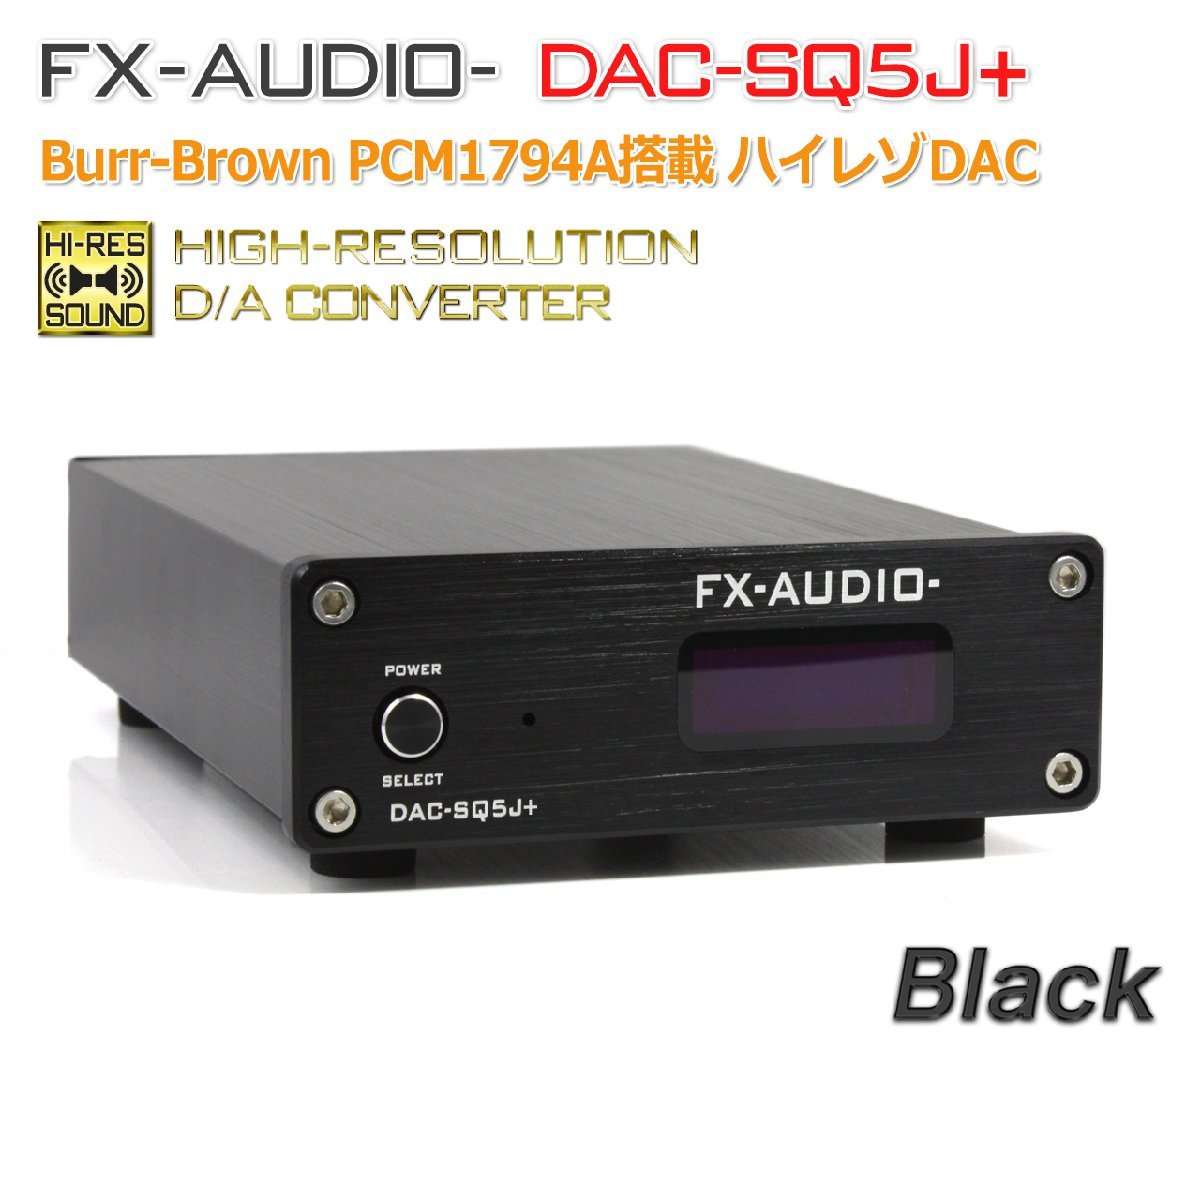 新しい Burr-Brown DAC-SQ5J+[ブラック] FX-AUDIO- PCM1794A搭載